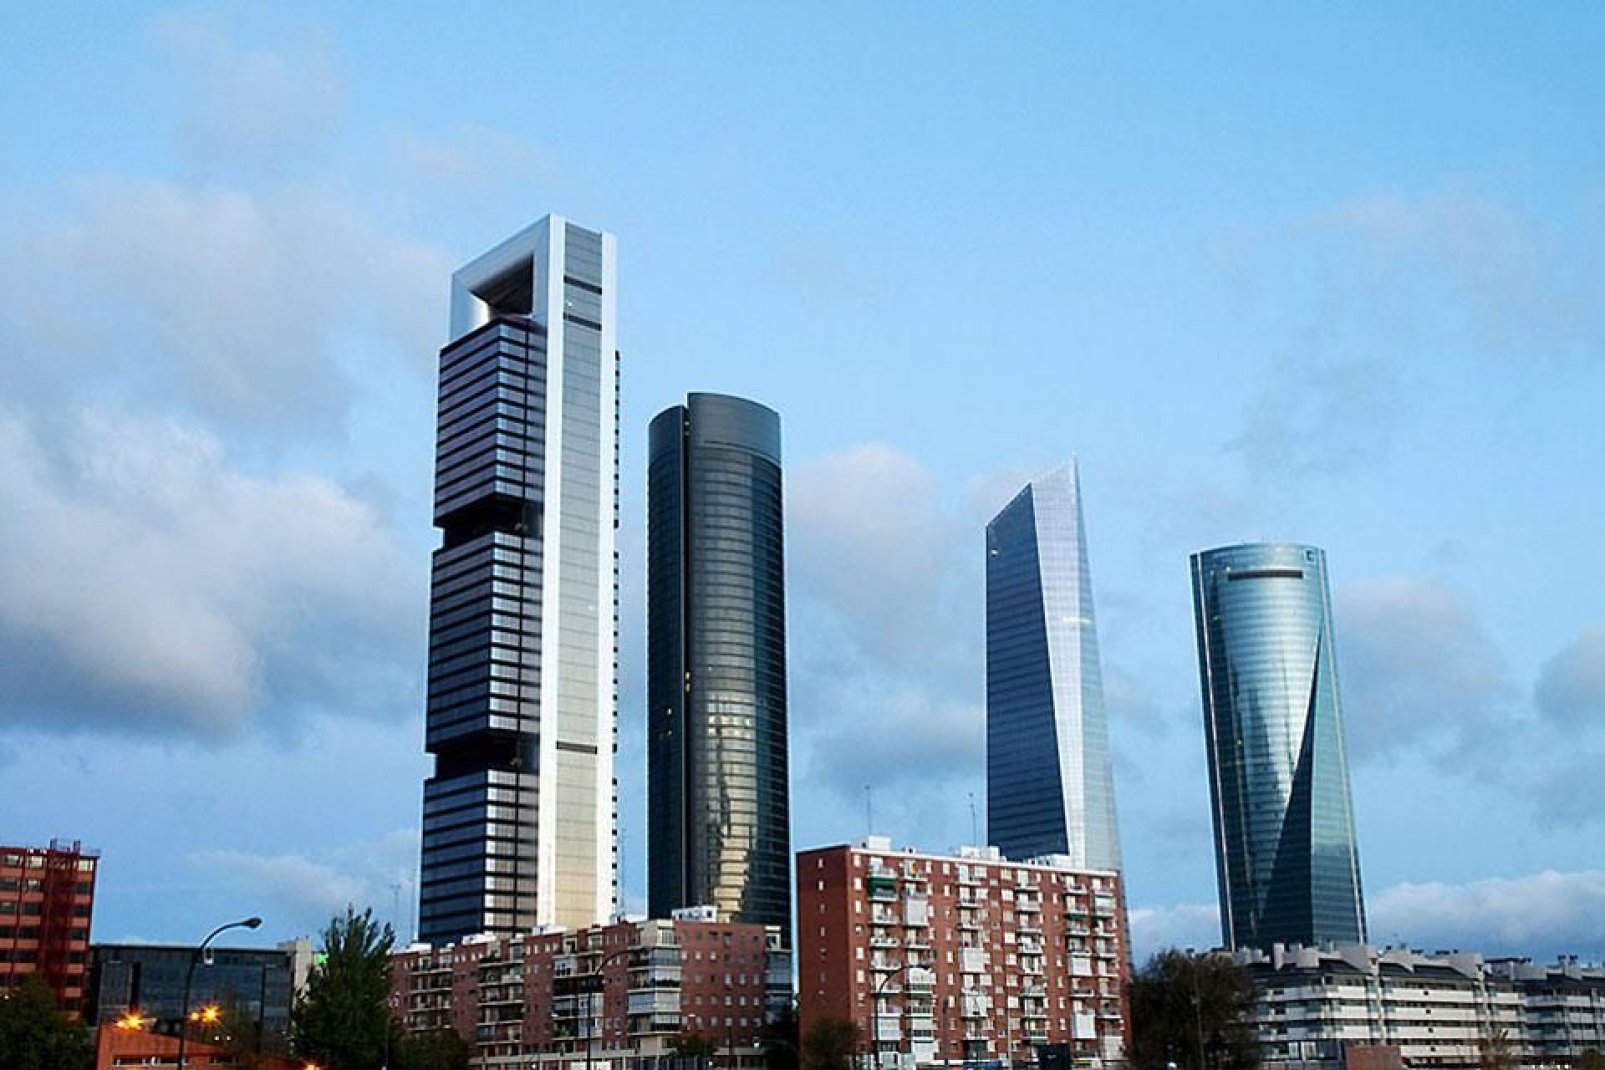 Aquí se encuentra la Torre Caja Madrid, la torre más alta del país diseñada por Norman Foster.